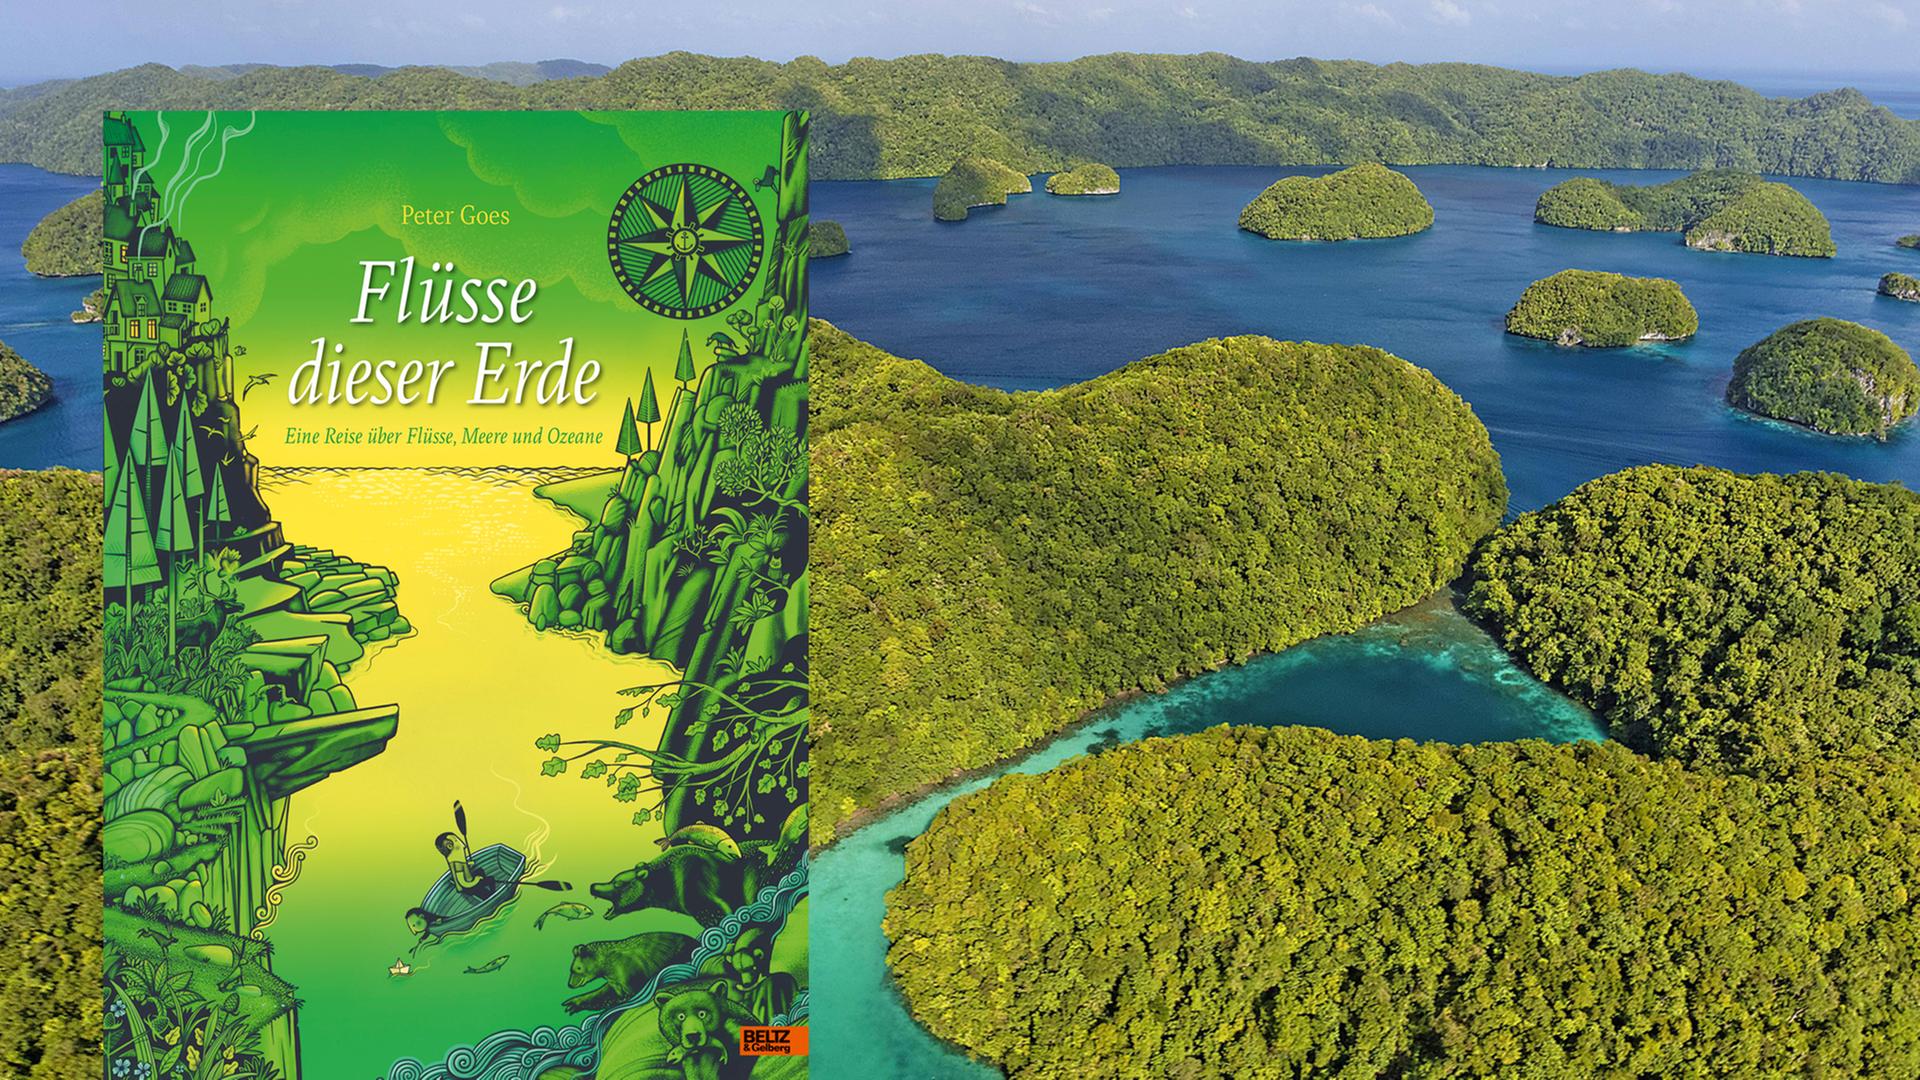 Bewaldete Inselgruppe im Westpazifik, Palau, und die das Cover des Kinderbuchs "Flüsse dieser Erde"